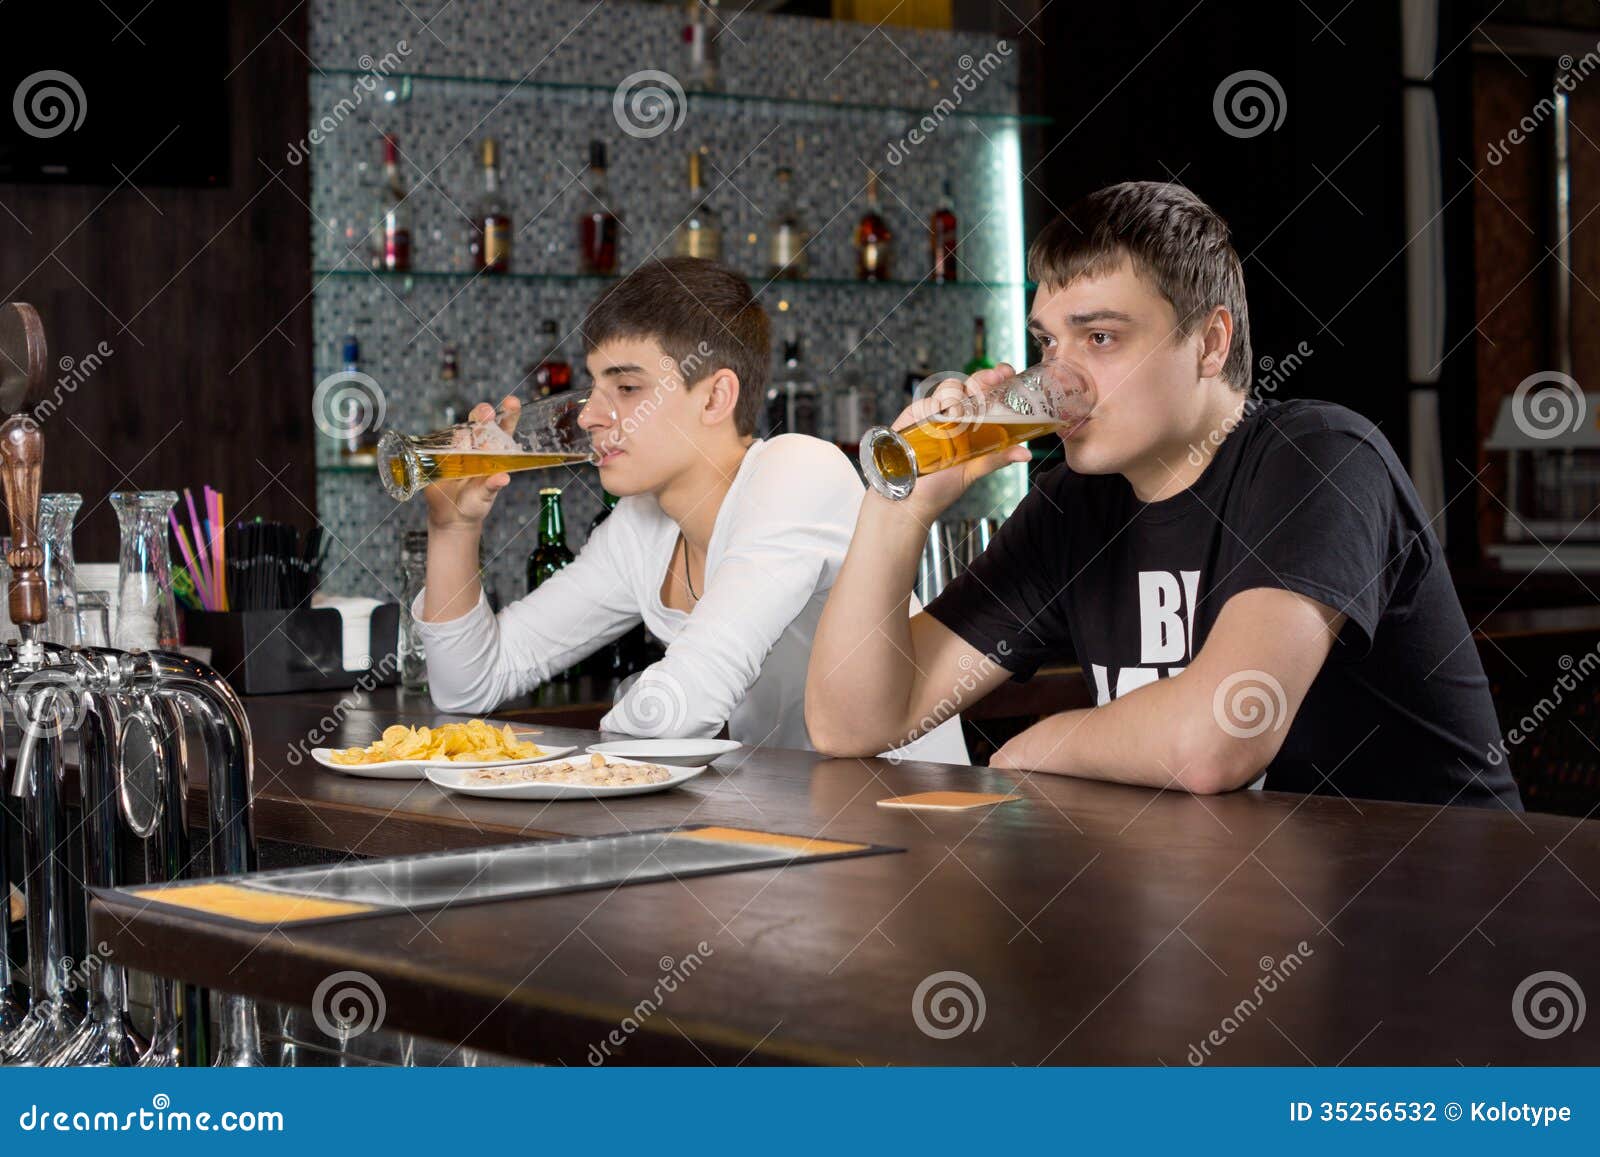 Попил стола. Мужик сидит в баре. Двое мужчин в баре. Двое мужчин сидят в баре. Парень сидит за барной стойкой.